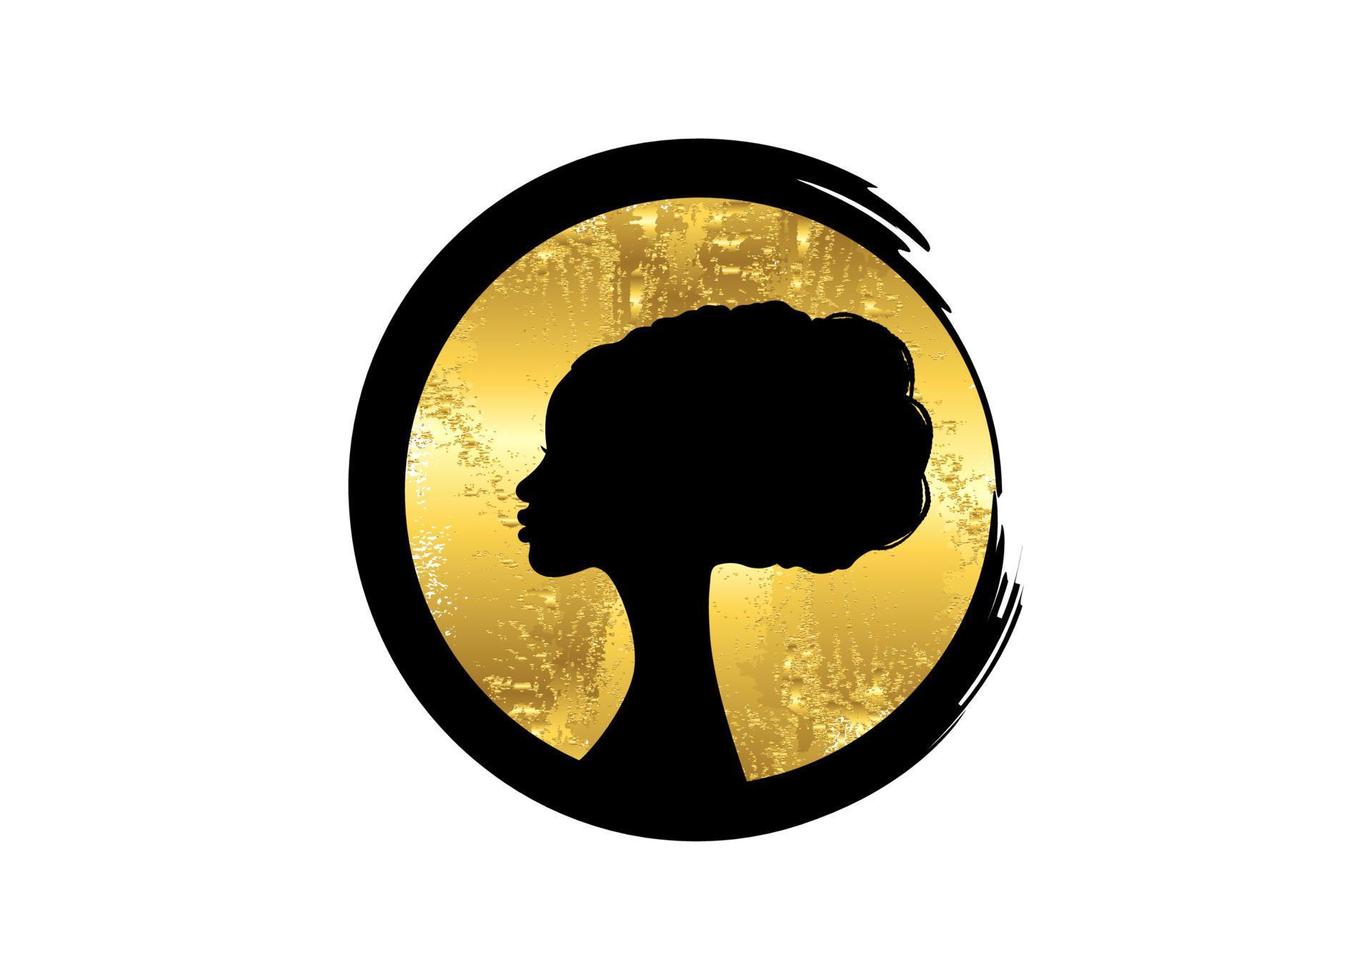 penteados afro, retrato, beleza, mulher, cabeleireiro, luxo, redondo, logotipo, desenho, silhueta, folha, folha ouro, círculo, fashion icon, vetorial, isolado, branco, fundo vetor